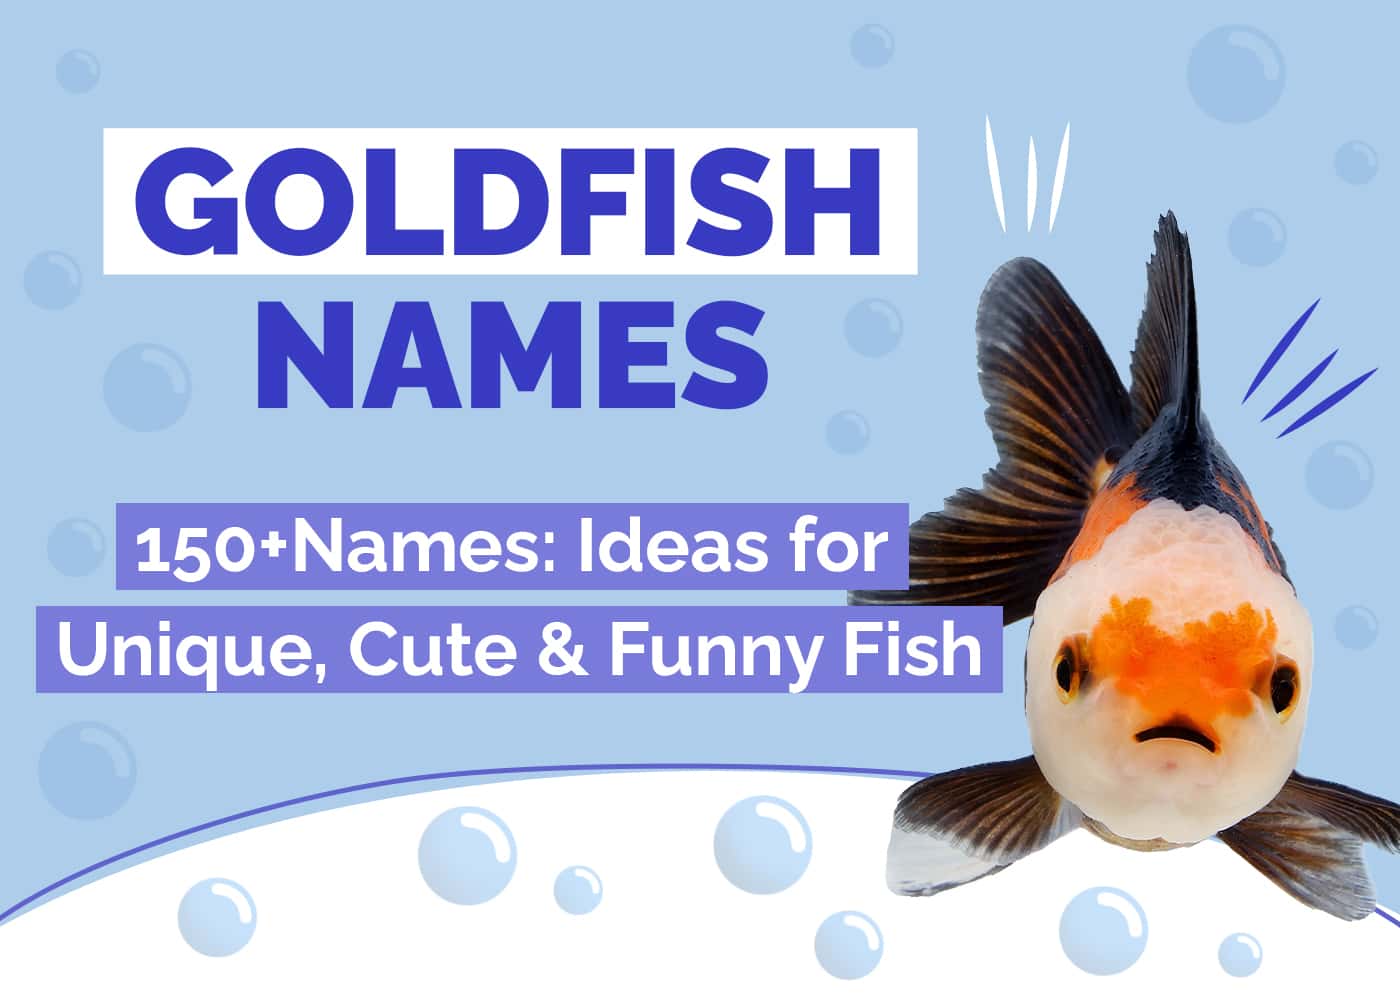 Hepper_gold fish Names Post